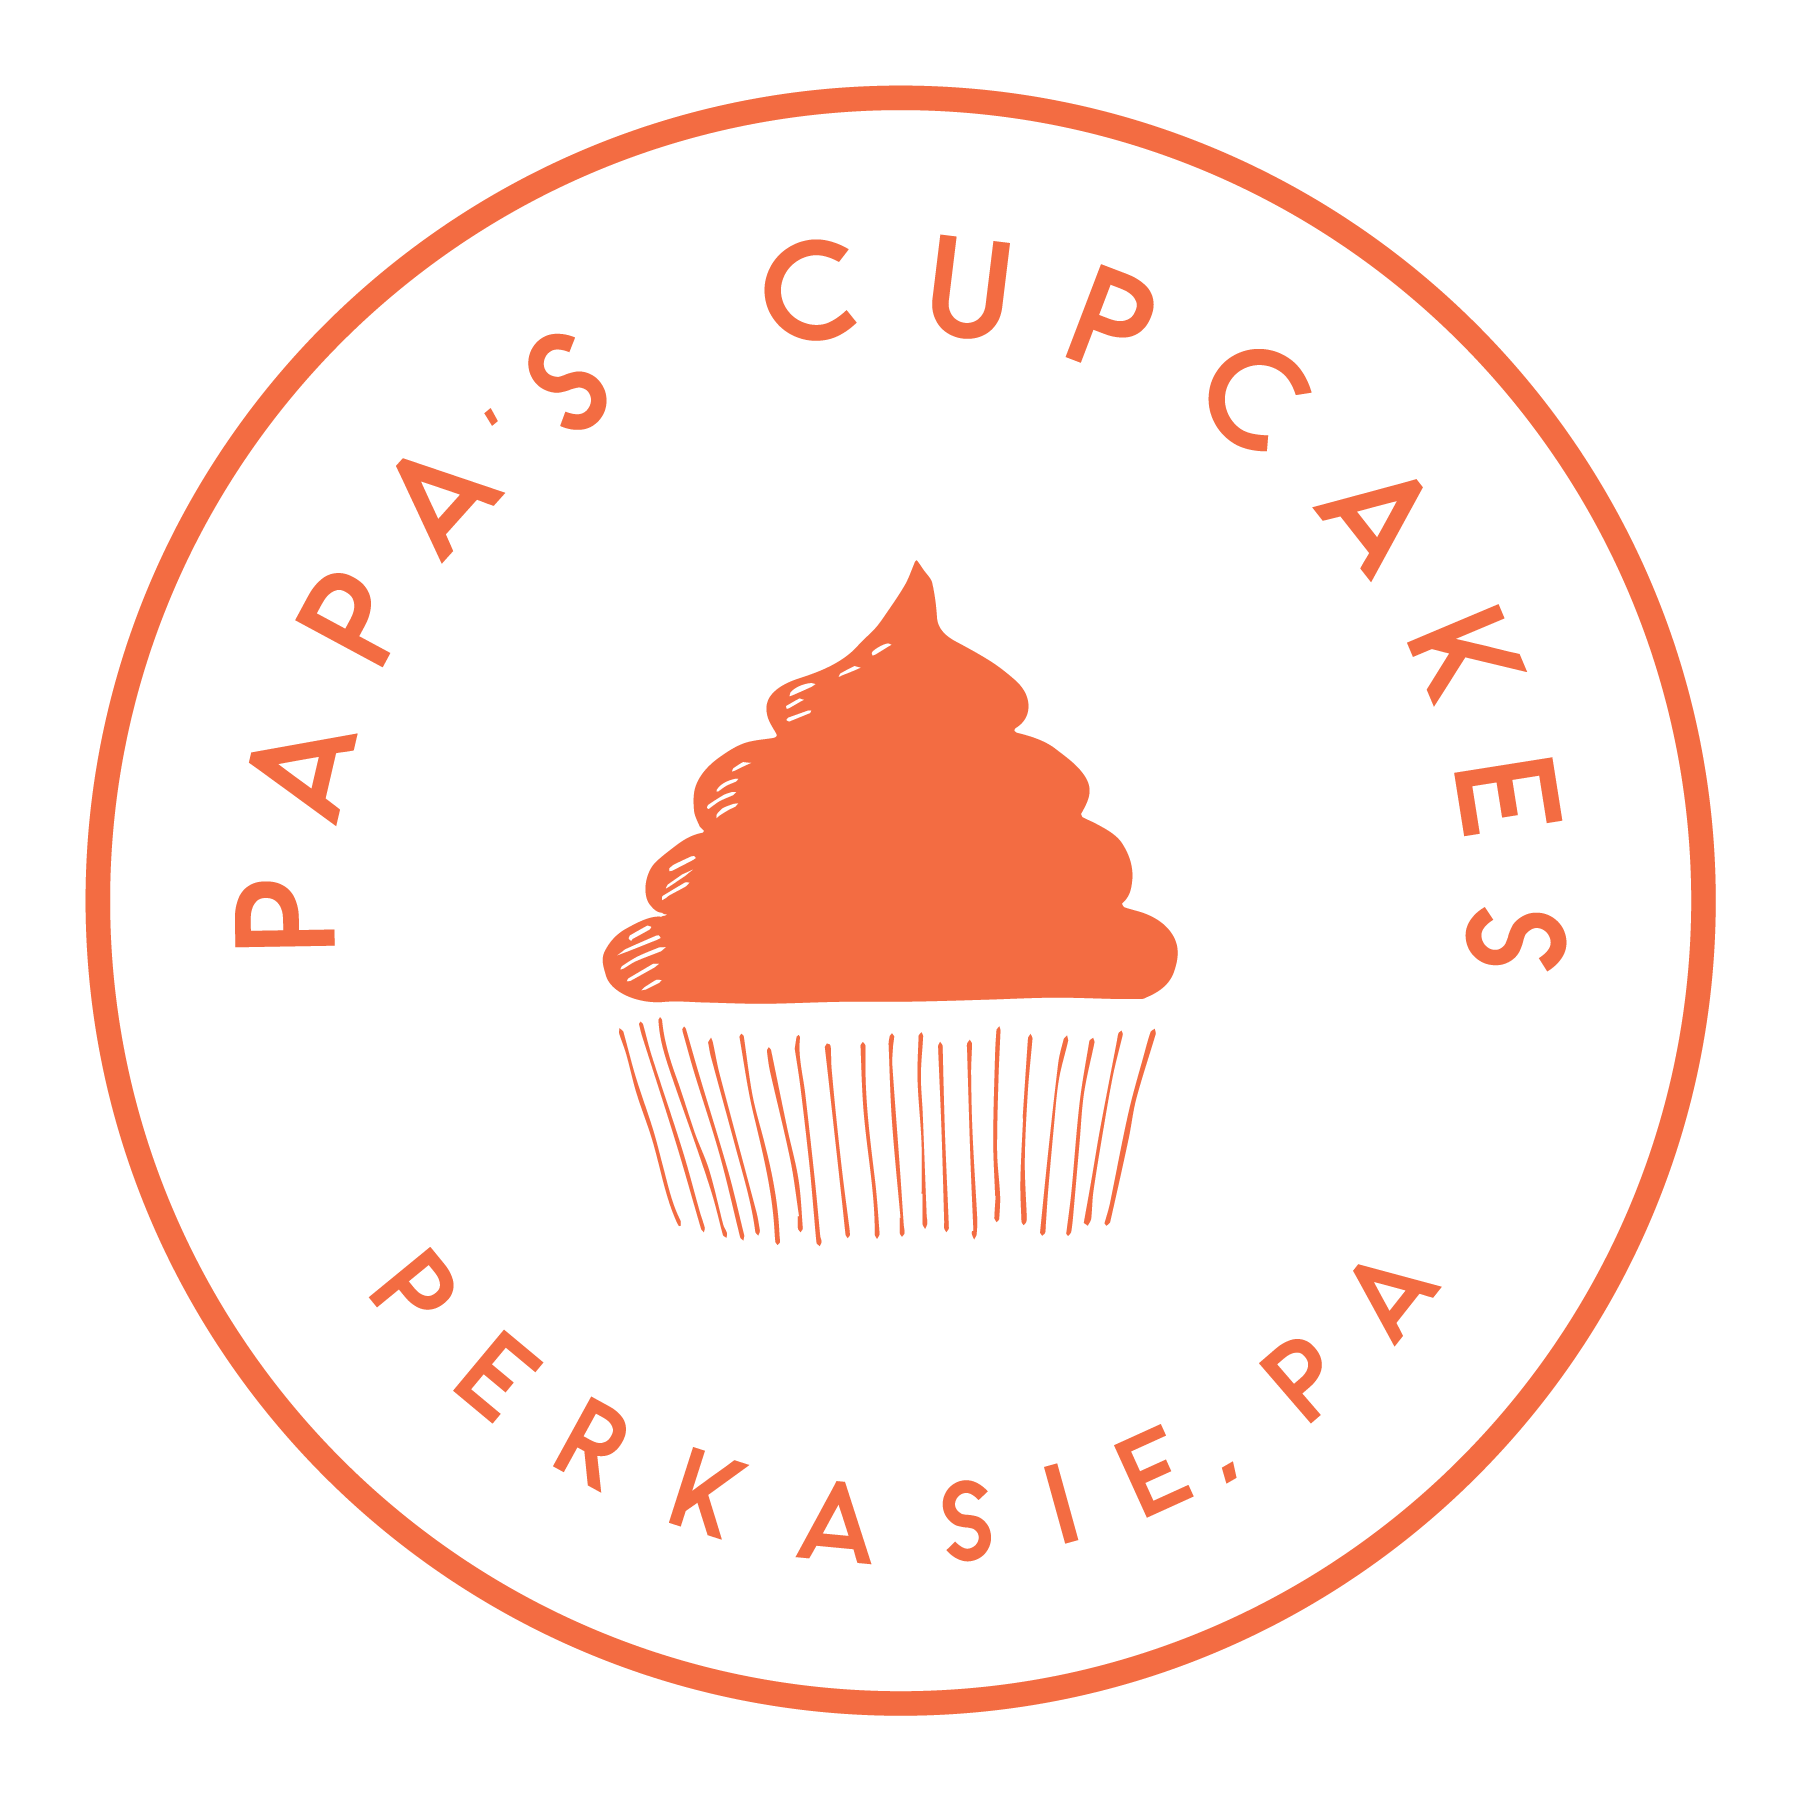 Papa's Cupcakes - Wedding Cake - Perkasie, PA - WeddingWire